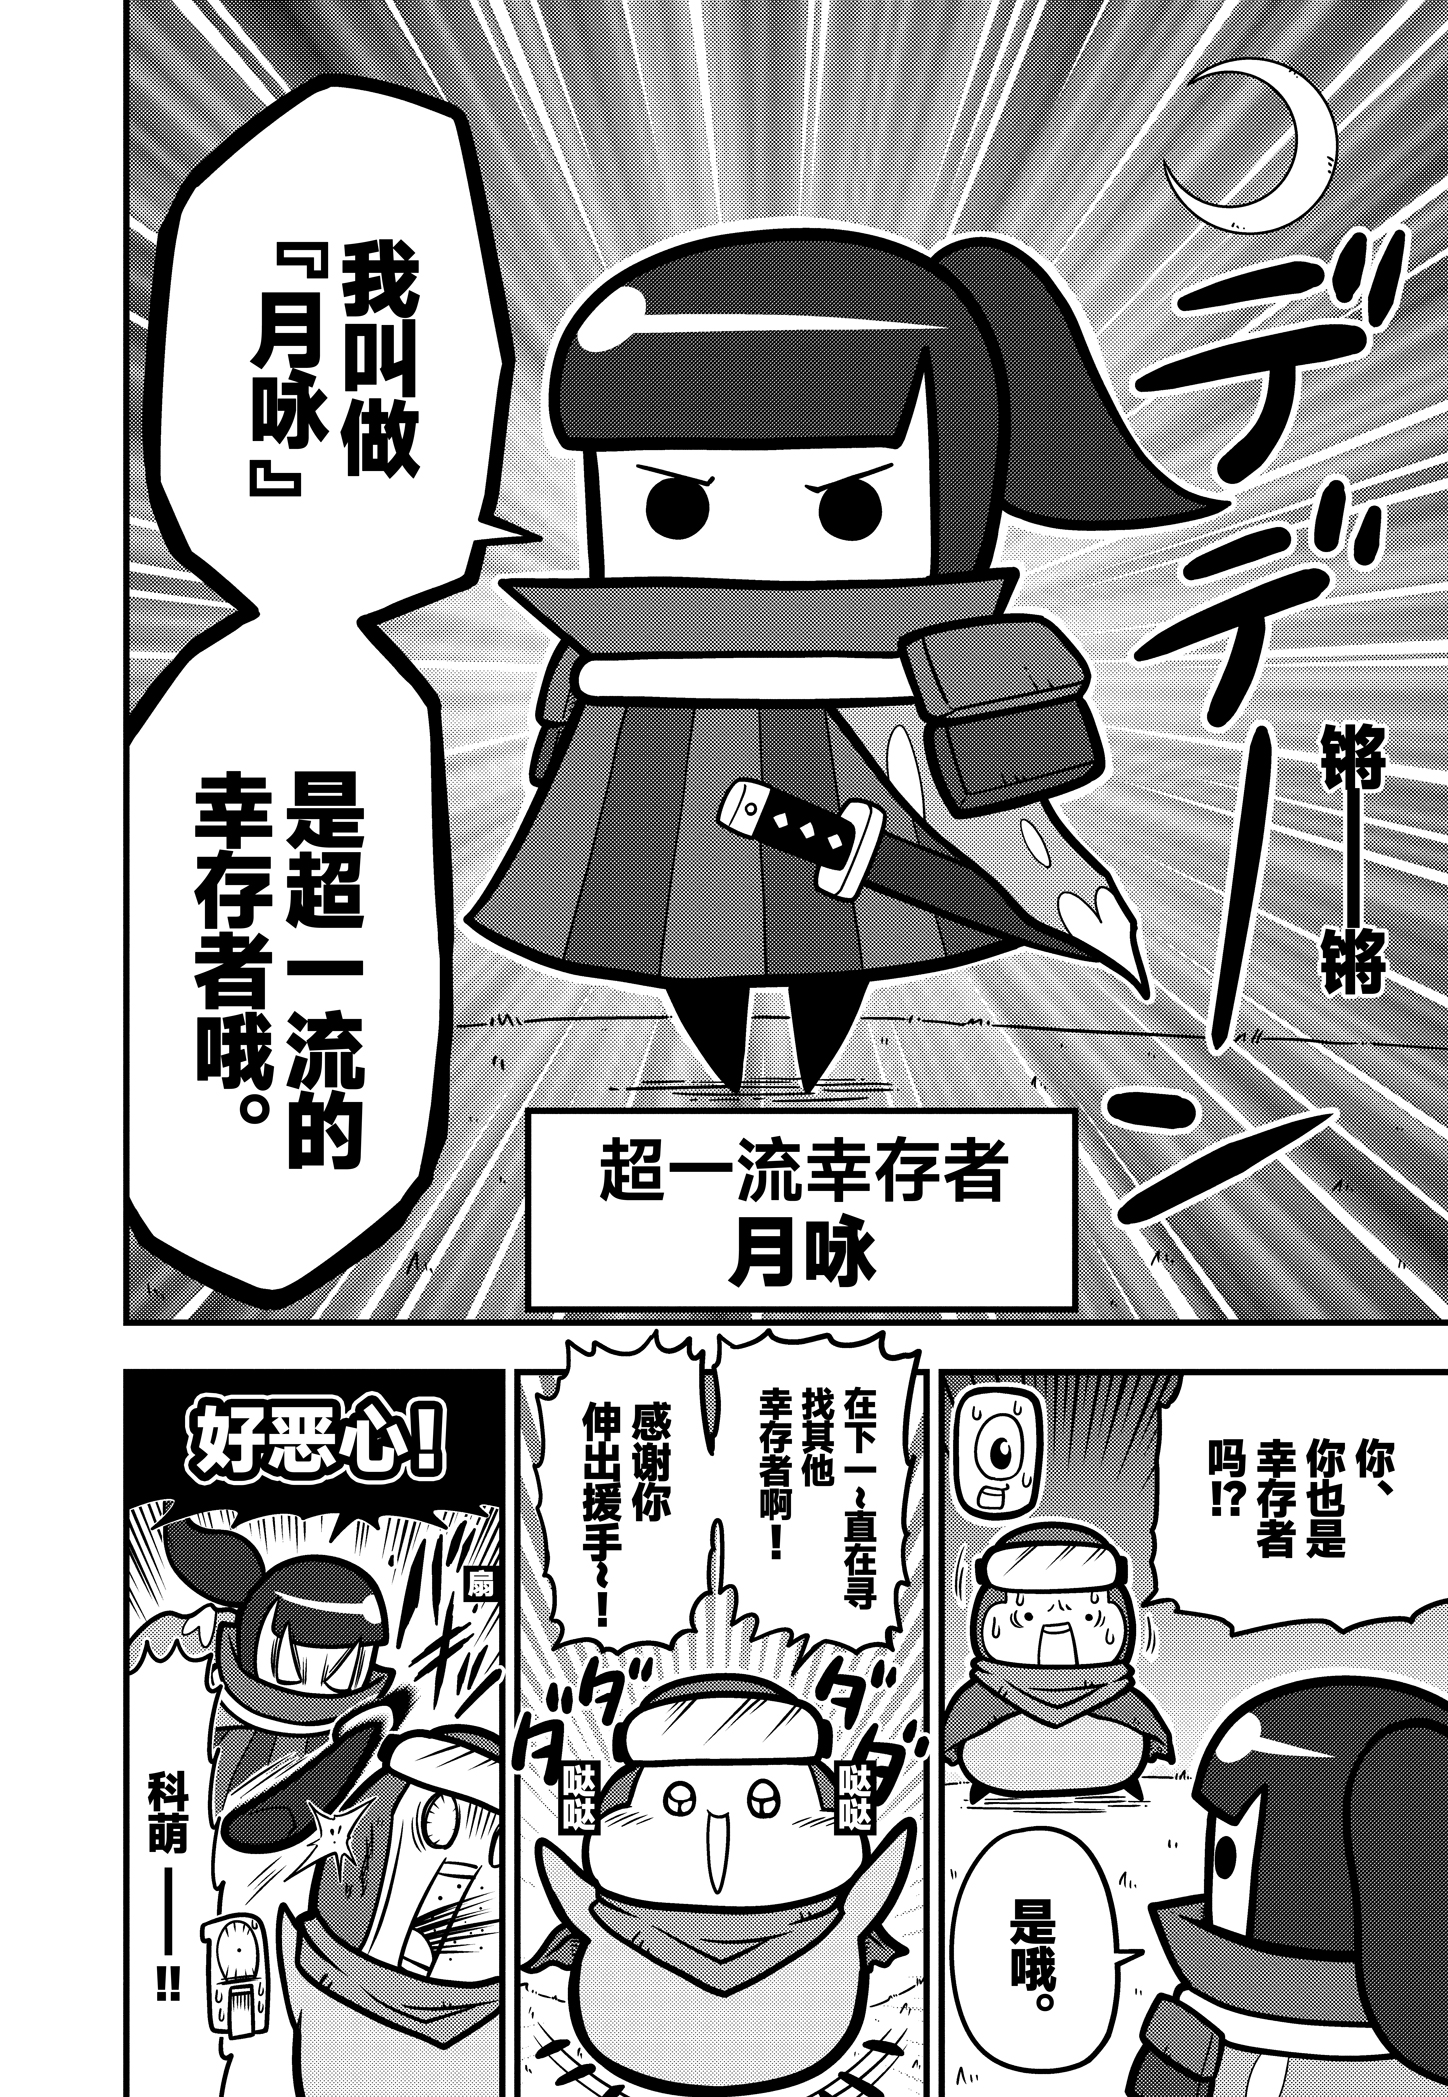 《弹壳特攻队》漫画第25话：美少女武士，月咏登场！